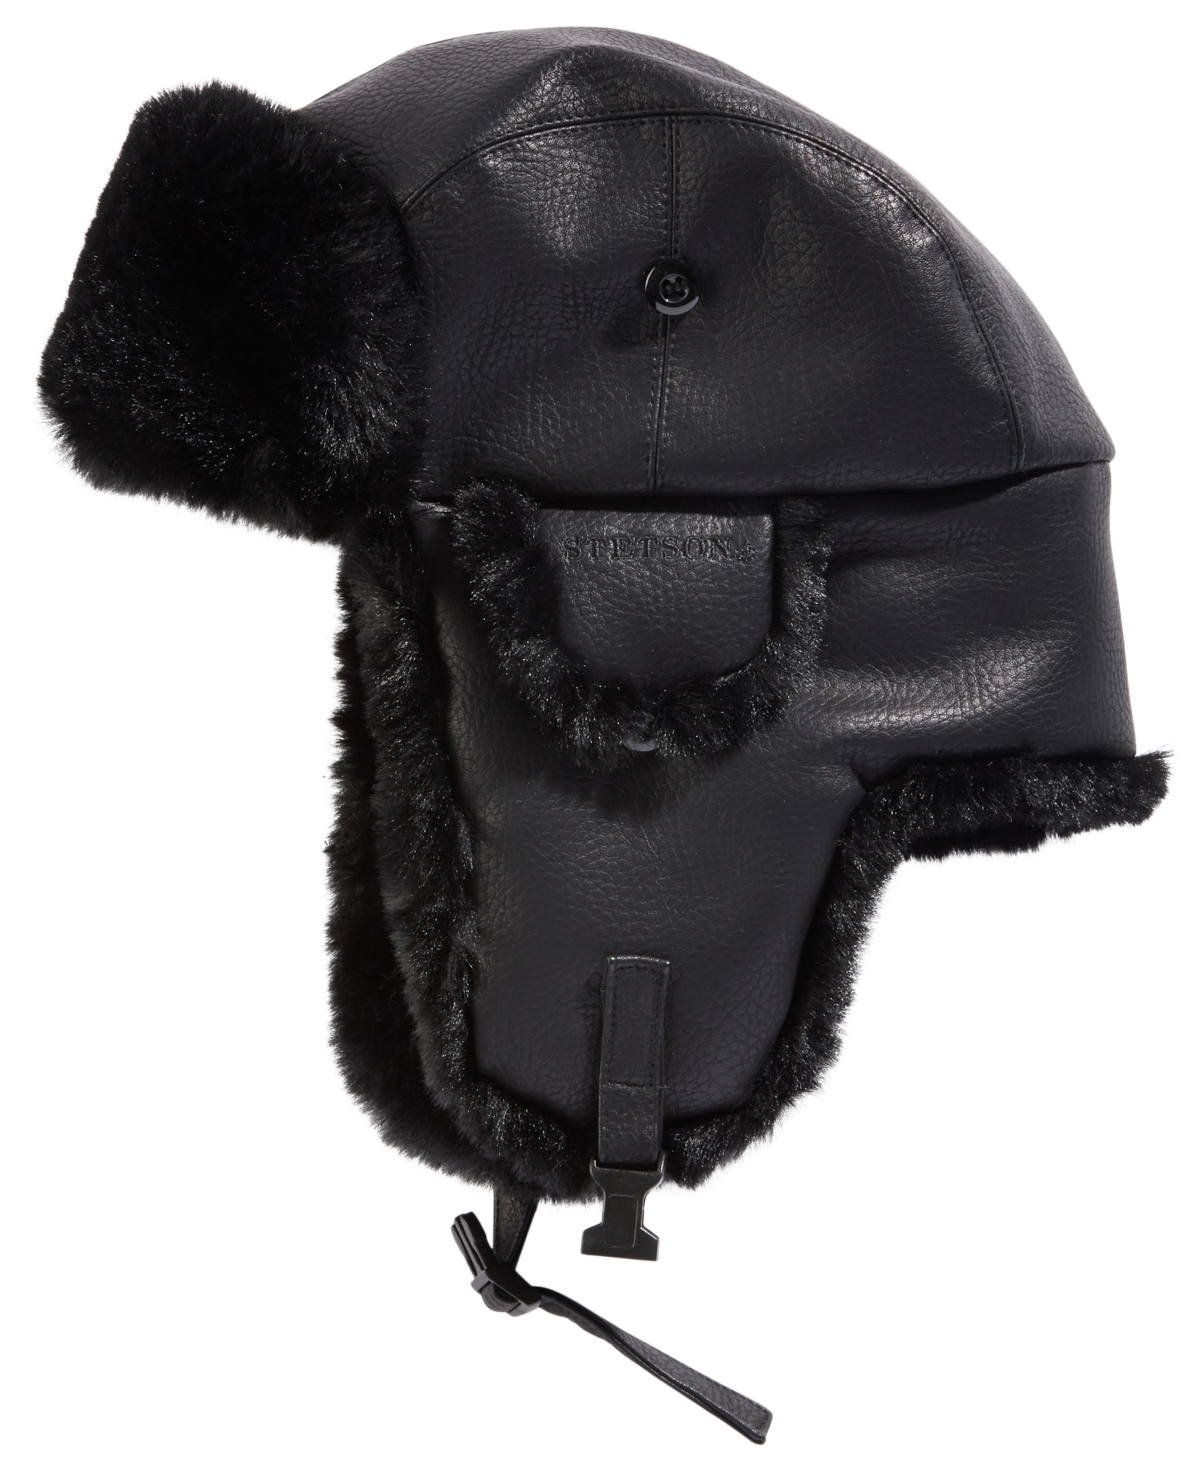 Men's Faux-Leather Trapper Hat - Black